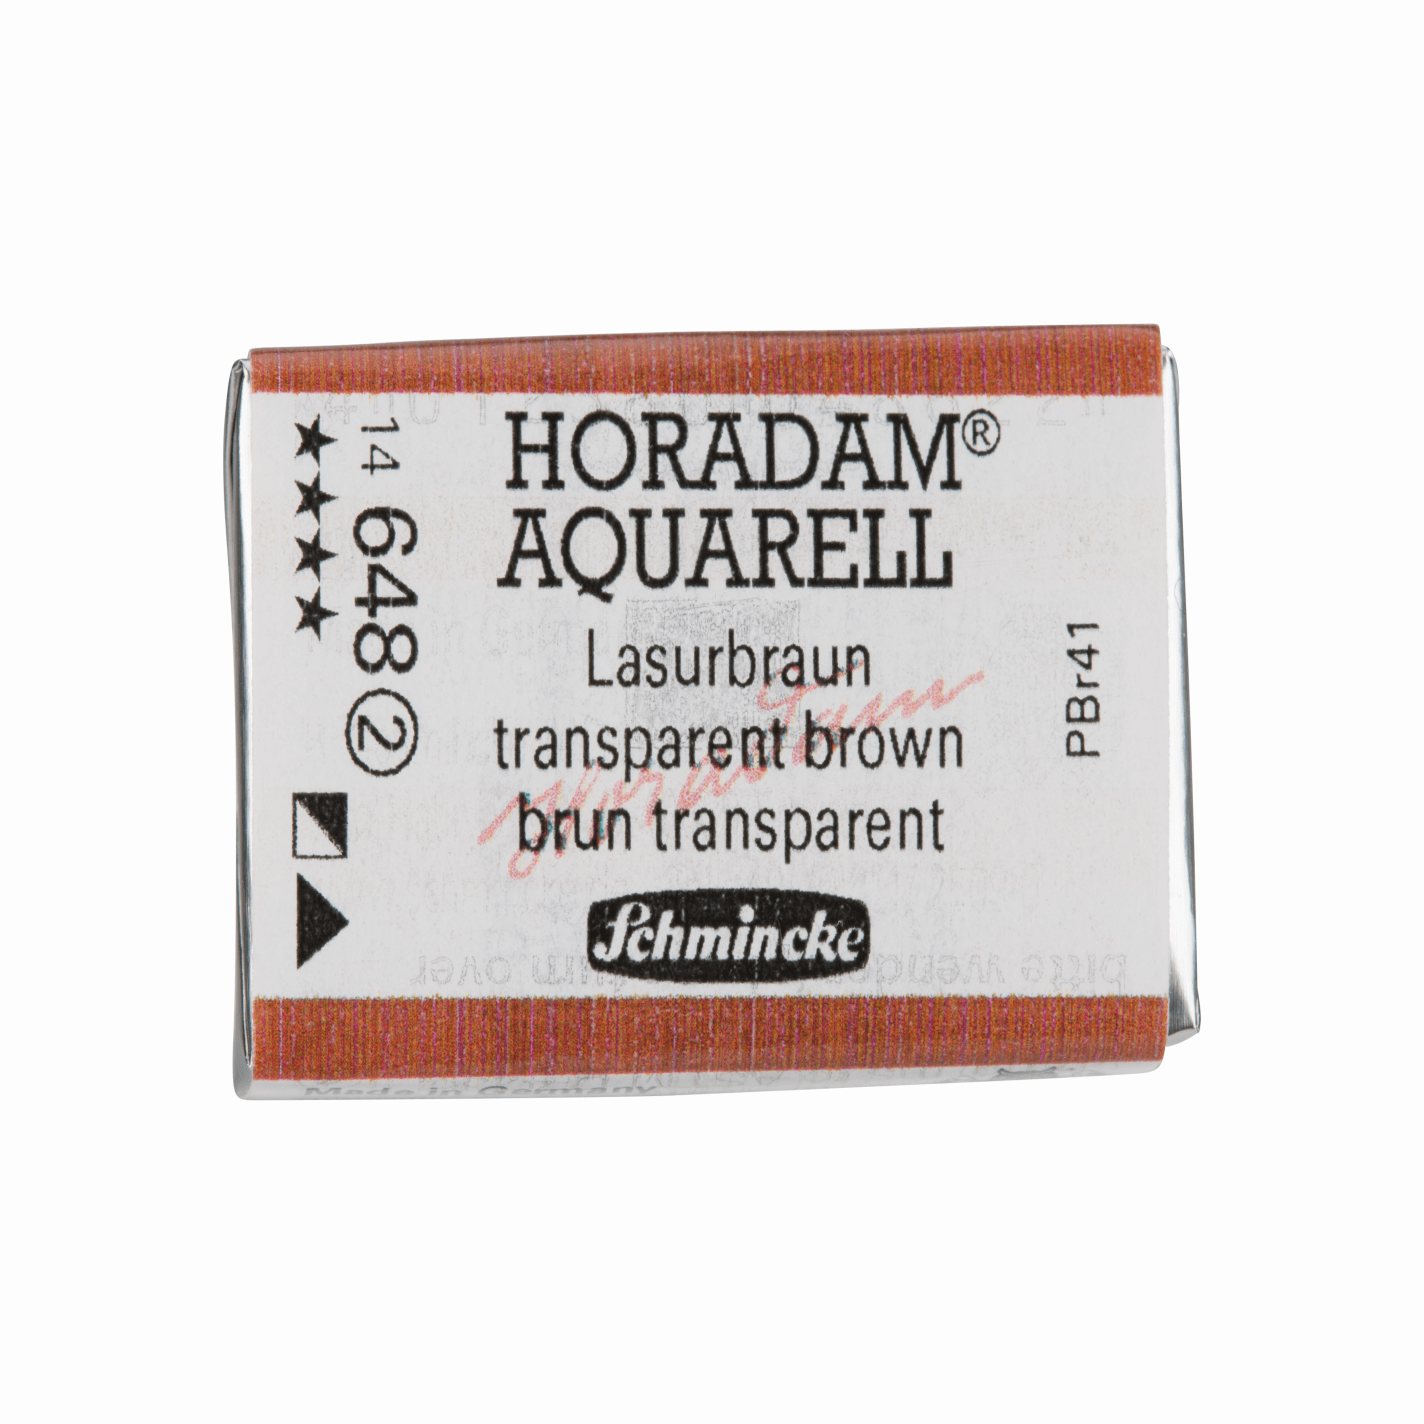 Schmincke Horadam Aquarell pans 1/1 pan Transparent Brown